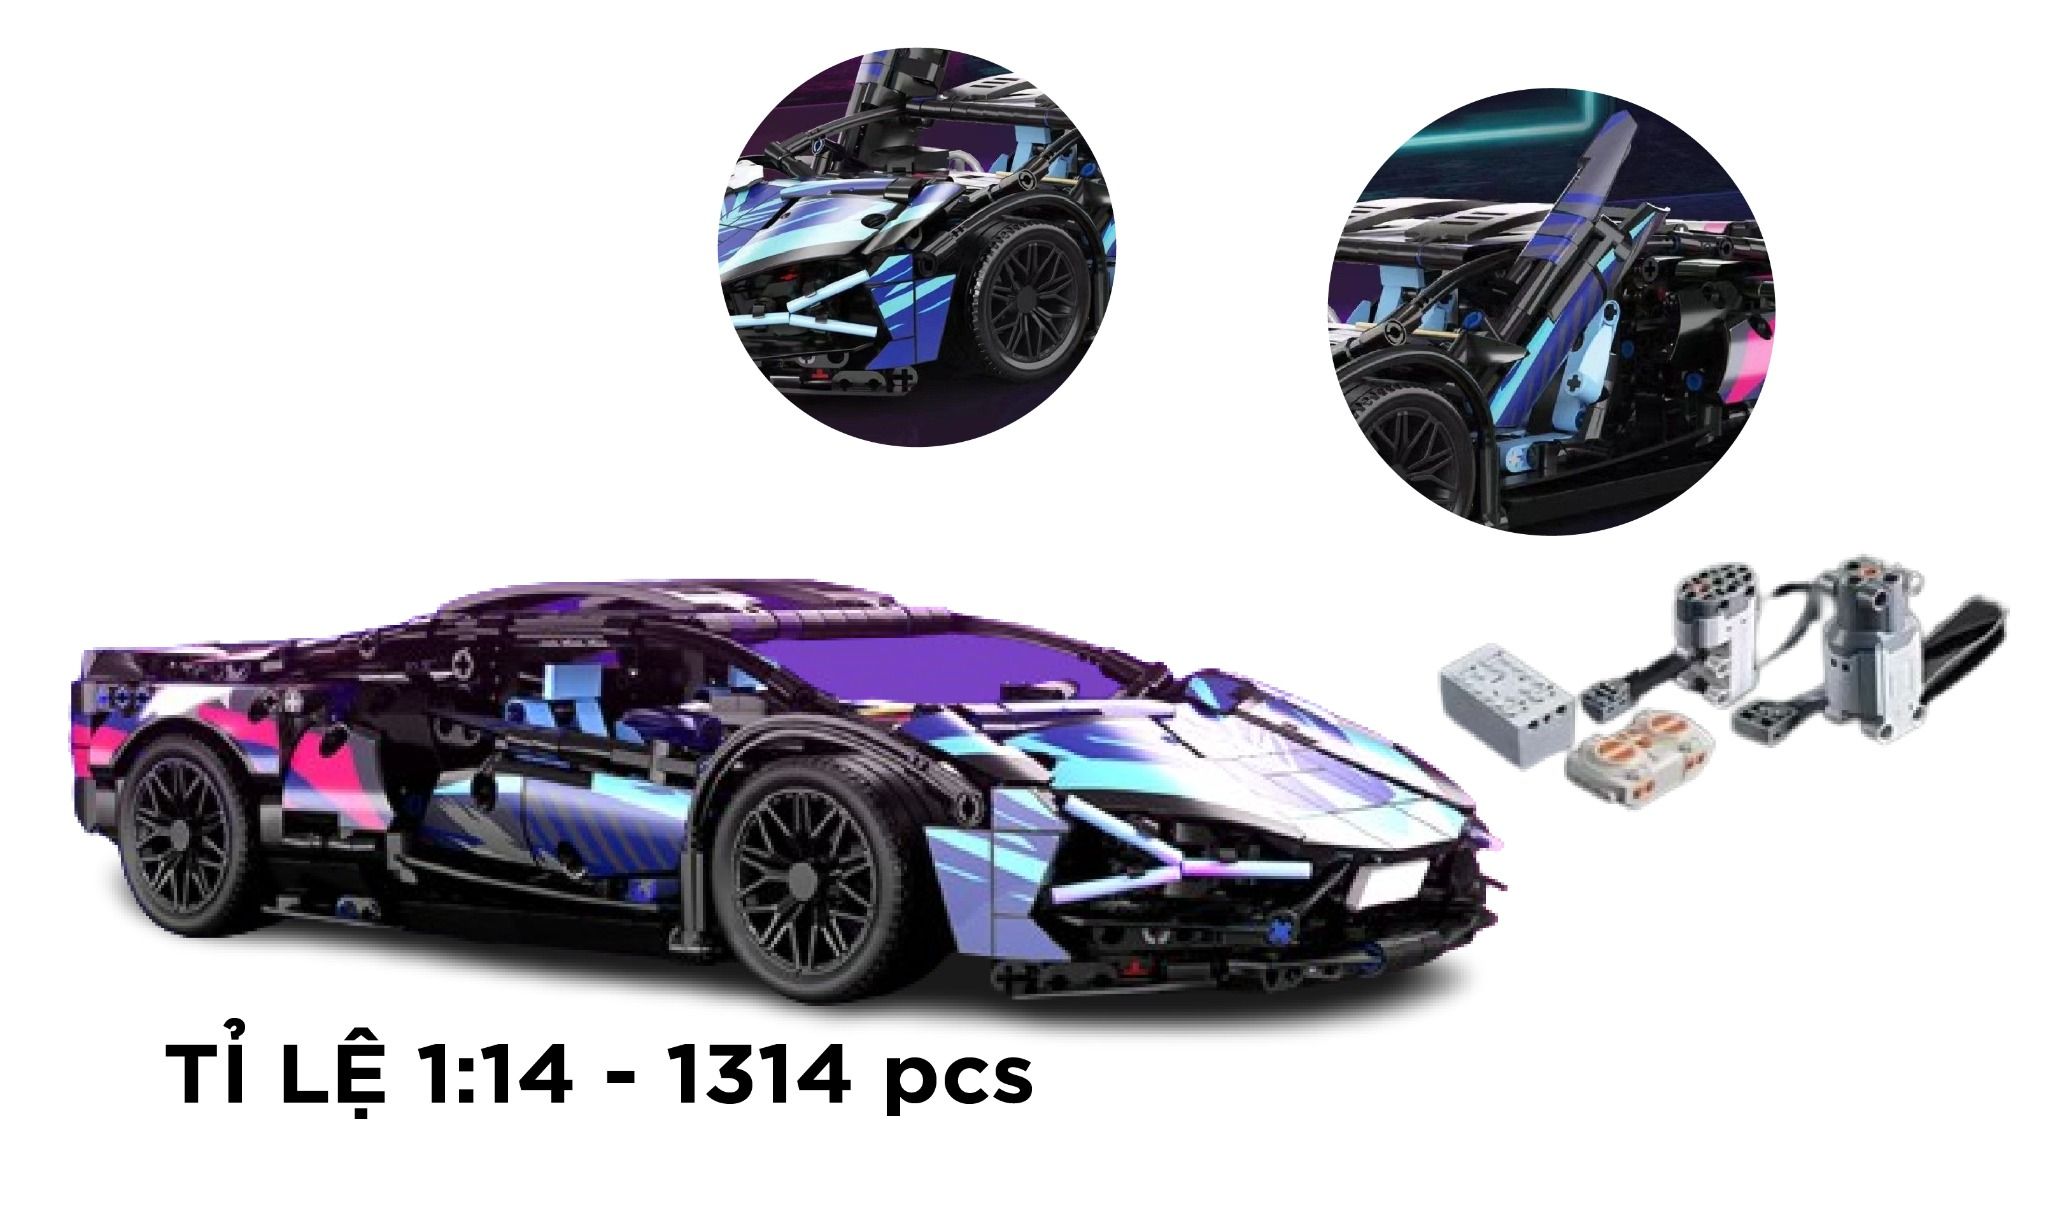  Mô hình xe ô tô lắp ghép Lamborghini CyberPunk galaxy 1314pcs, có điều khiển tỉ lệ 1:14 LG021B 